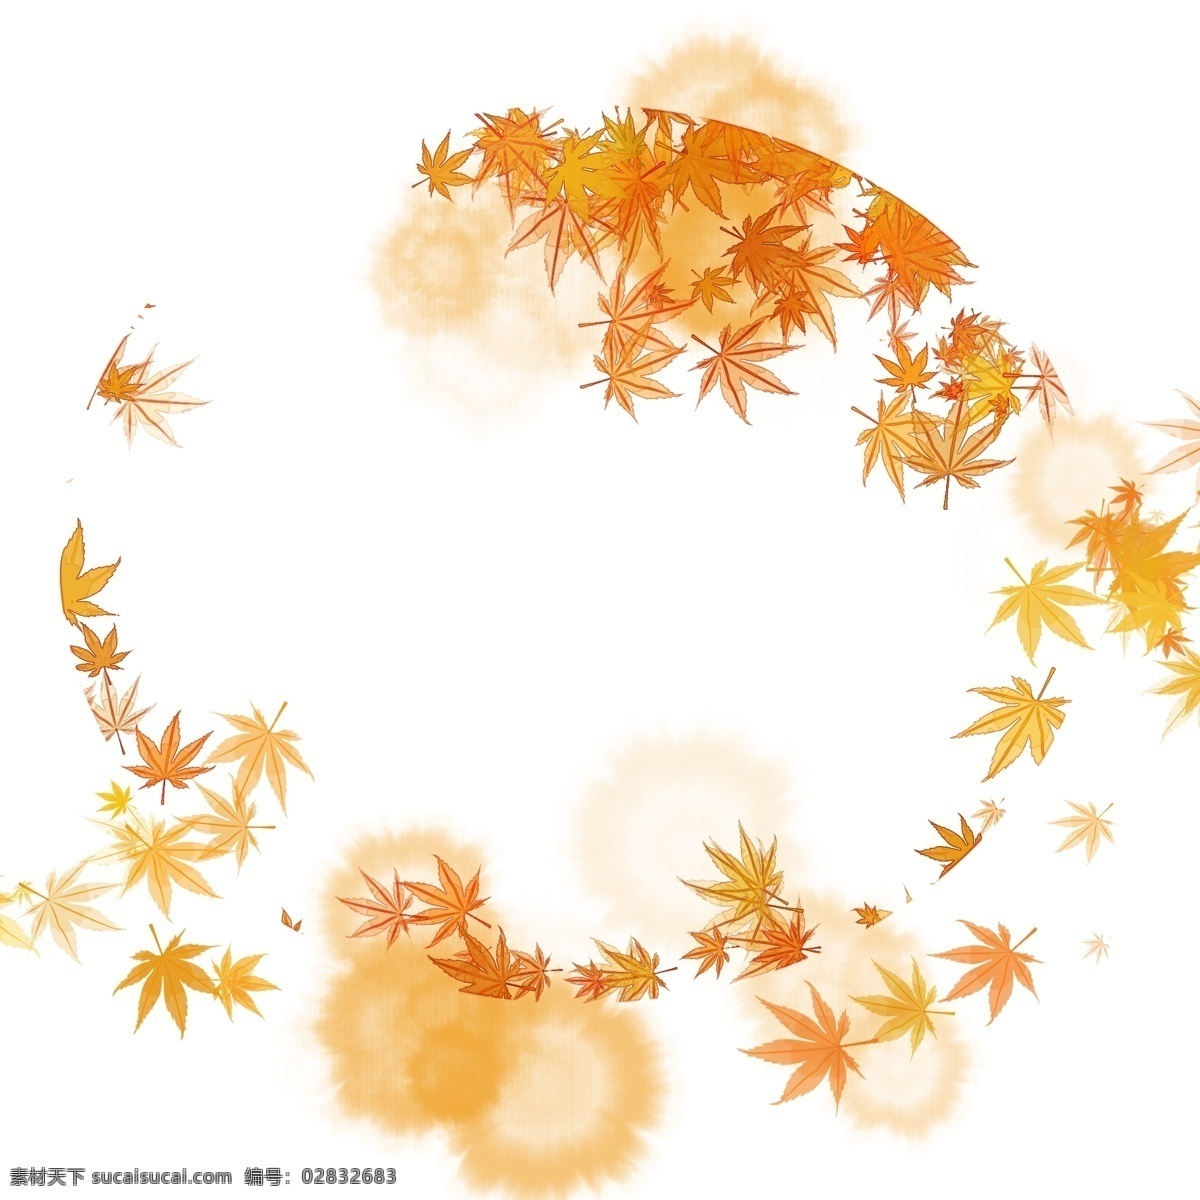 秋天 枫树 叶子 插画 枫树的叶子 卡通边框 植物边框 叶子边框 圆形边框 树叶边框 飘舞的叶子